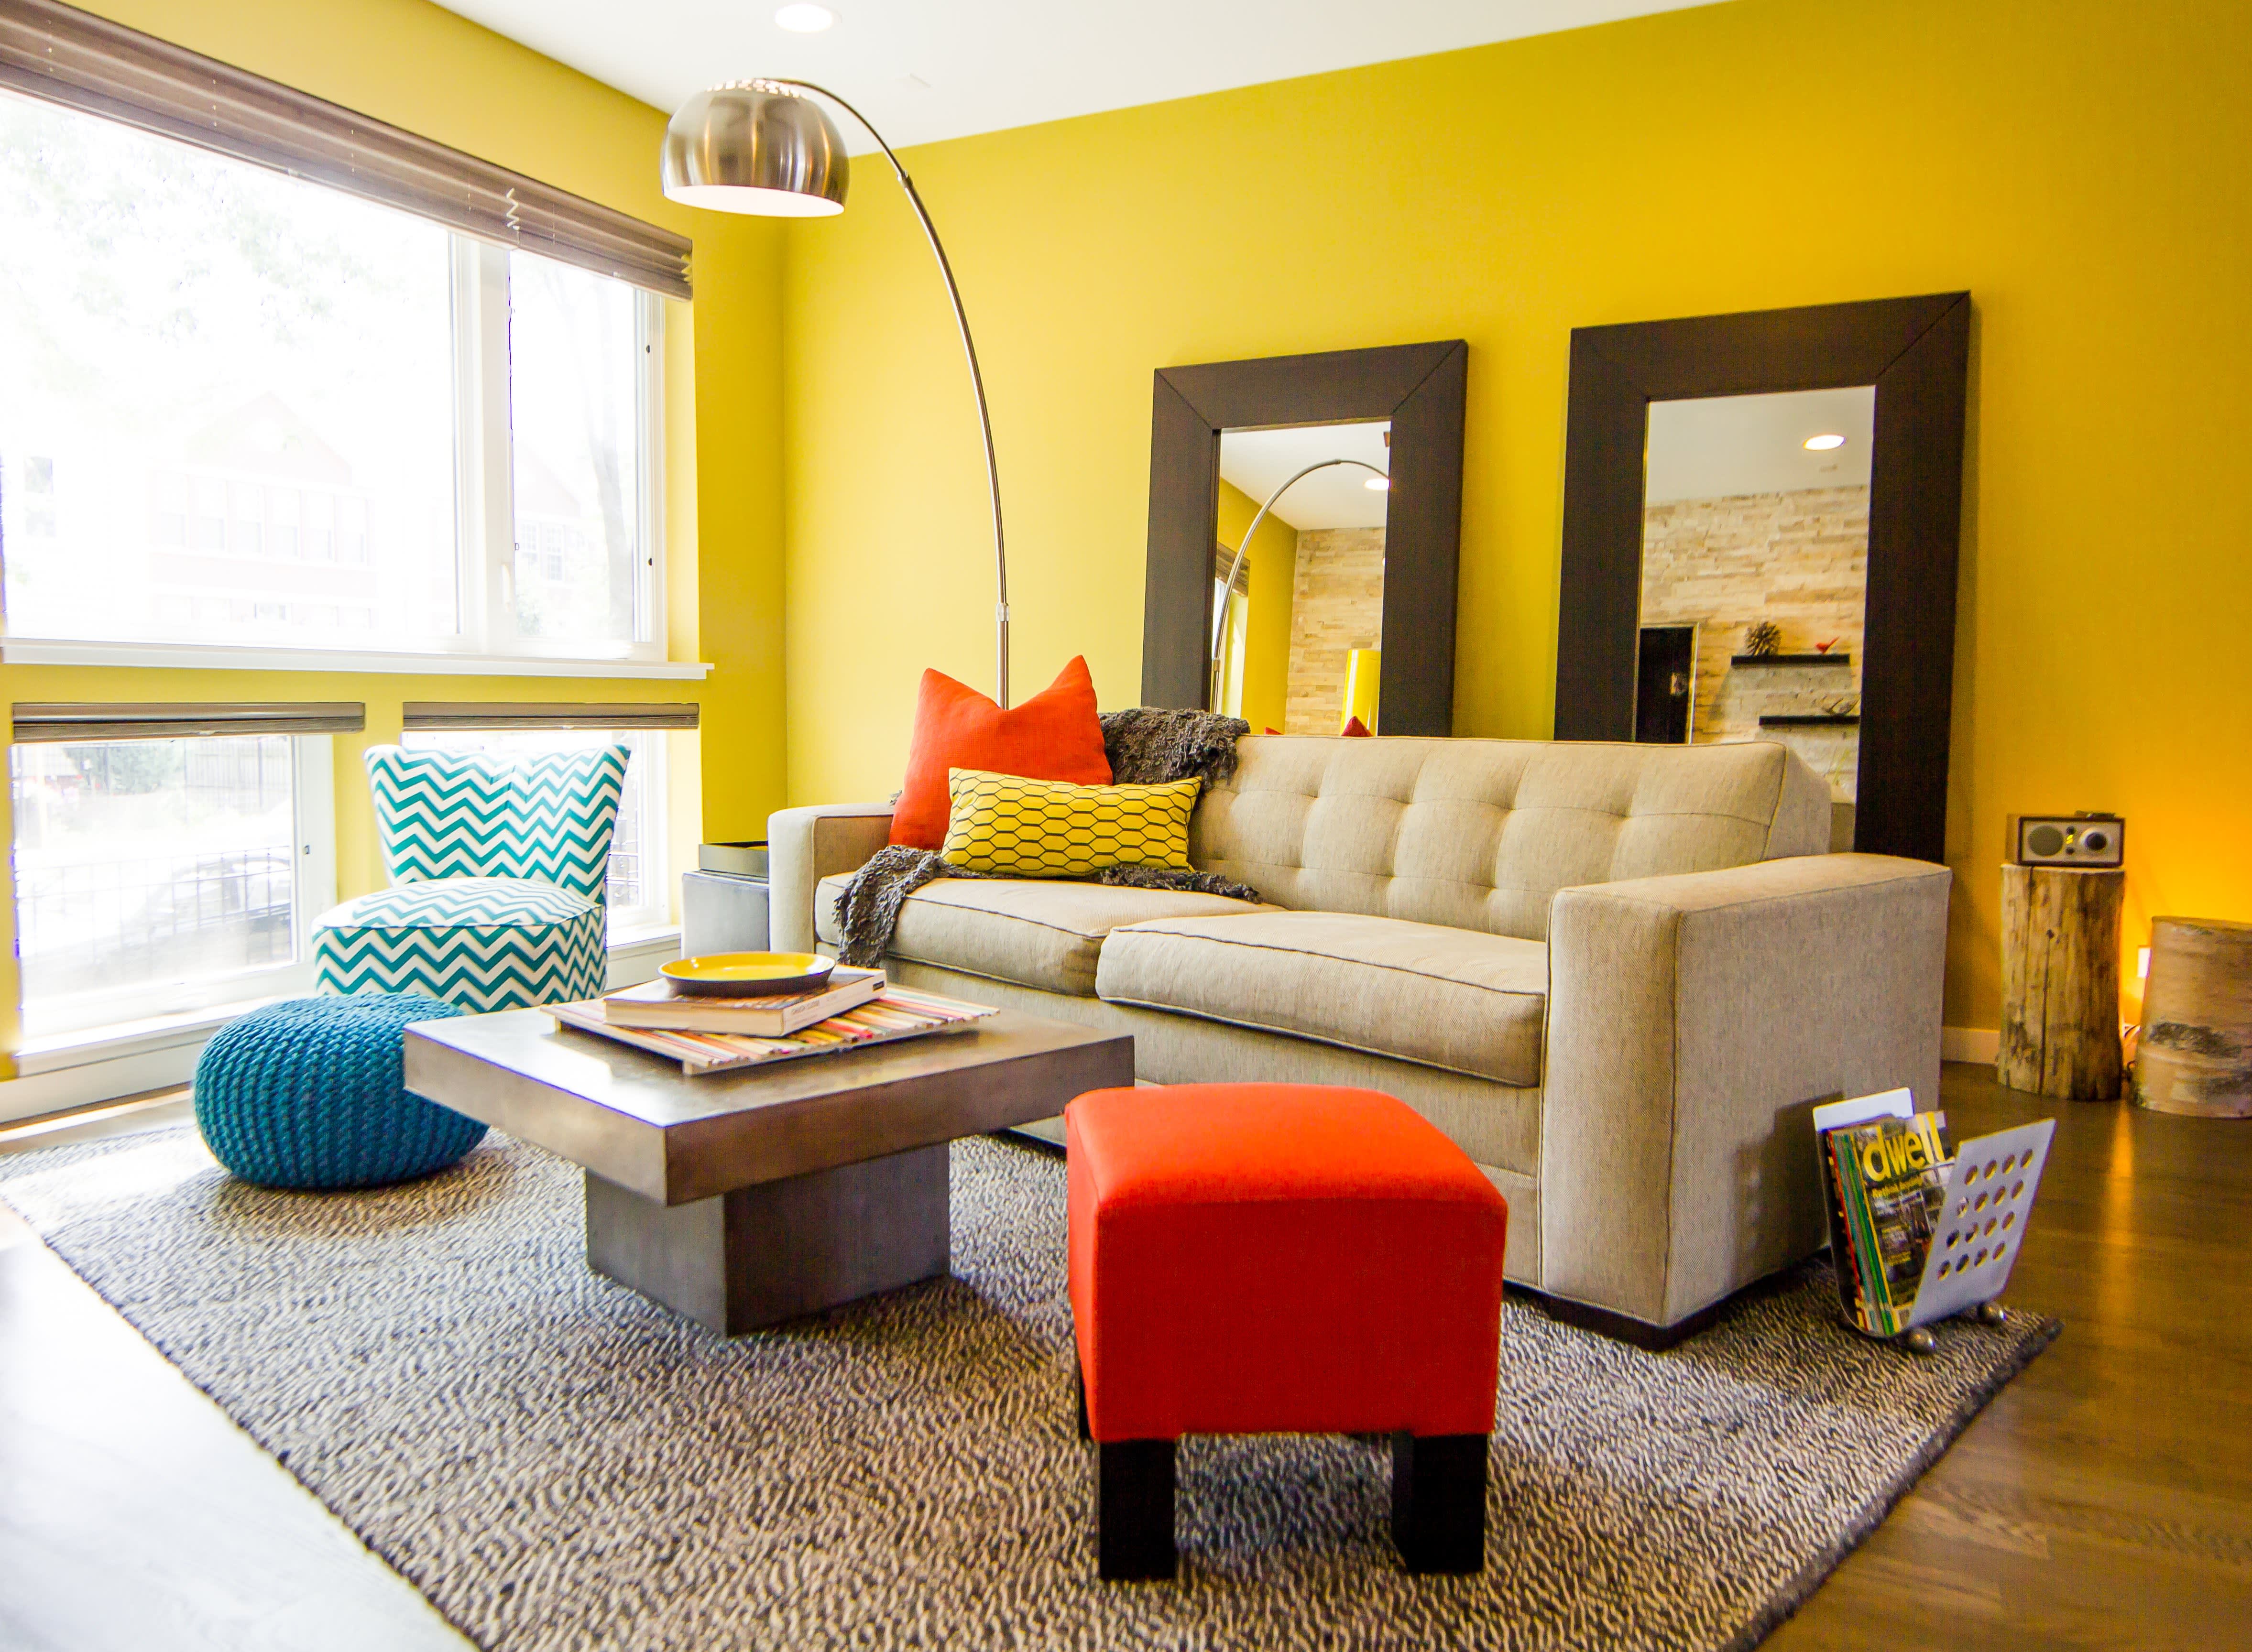 Цвета стен в интерьере гостиной. Интерьер в ярких тонах. Желтая гостиная. Гостиная в желтом цвете. Желтый диван в интерьере.